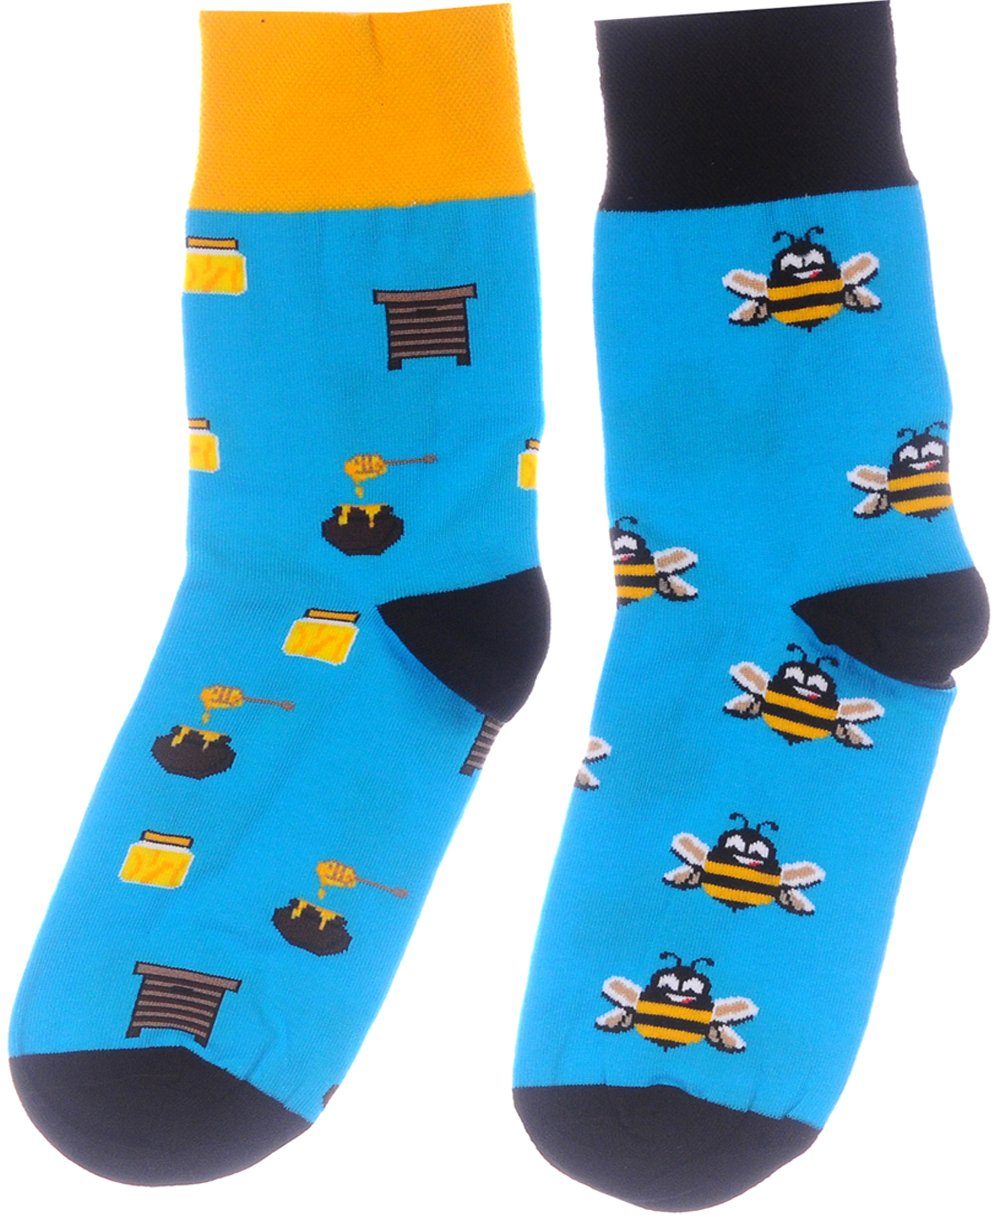 Martinex Socken »1 Paar Socken lustige bunte witzige Strümpfe 35 38 39 42  43 46« online kaufen | OTTO